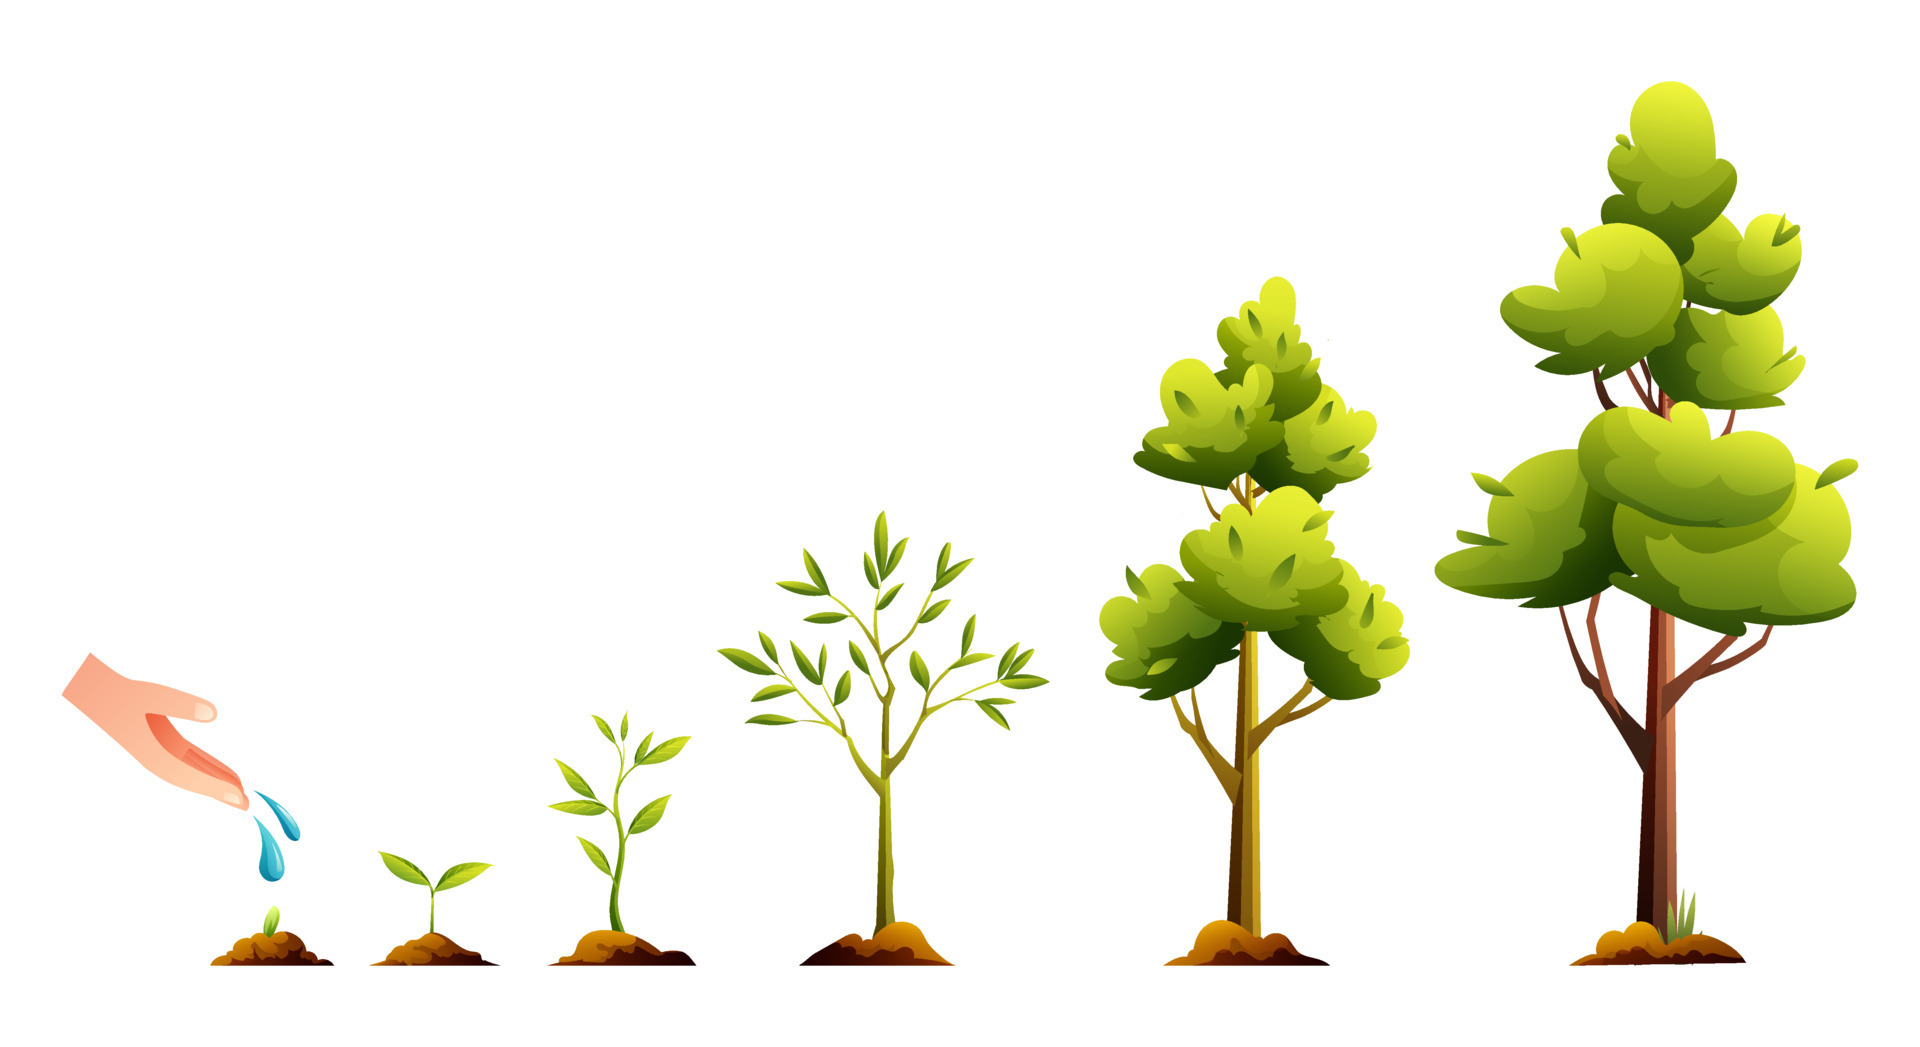 ciclo de vida da árvore. ilustração de desenhos animados de estágios de crescimento e desenvolvimento de plantas 8856891 Vetor no Vecteezy